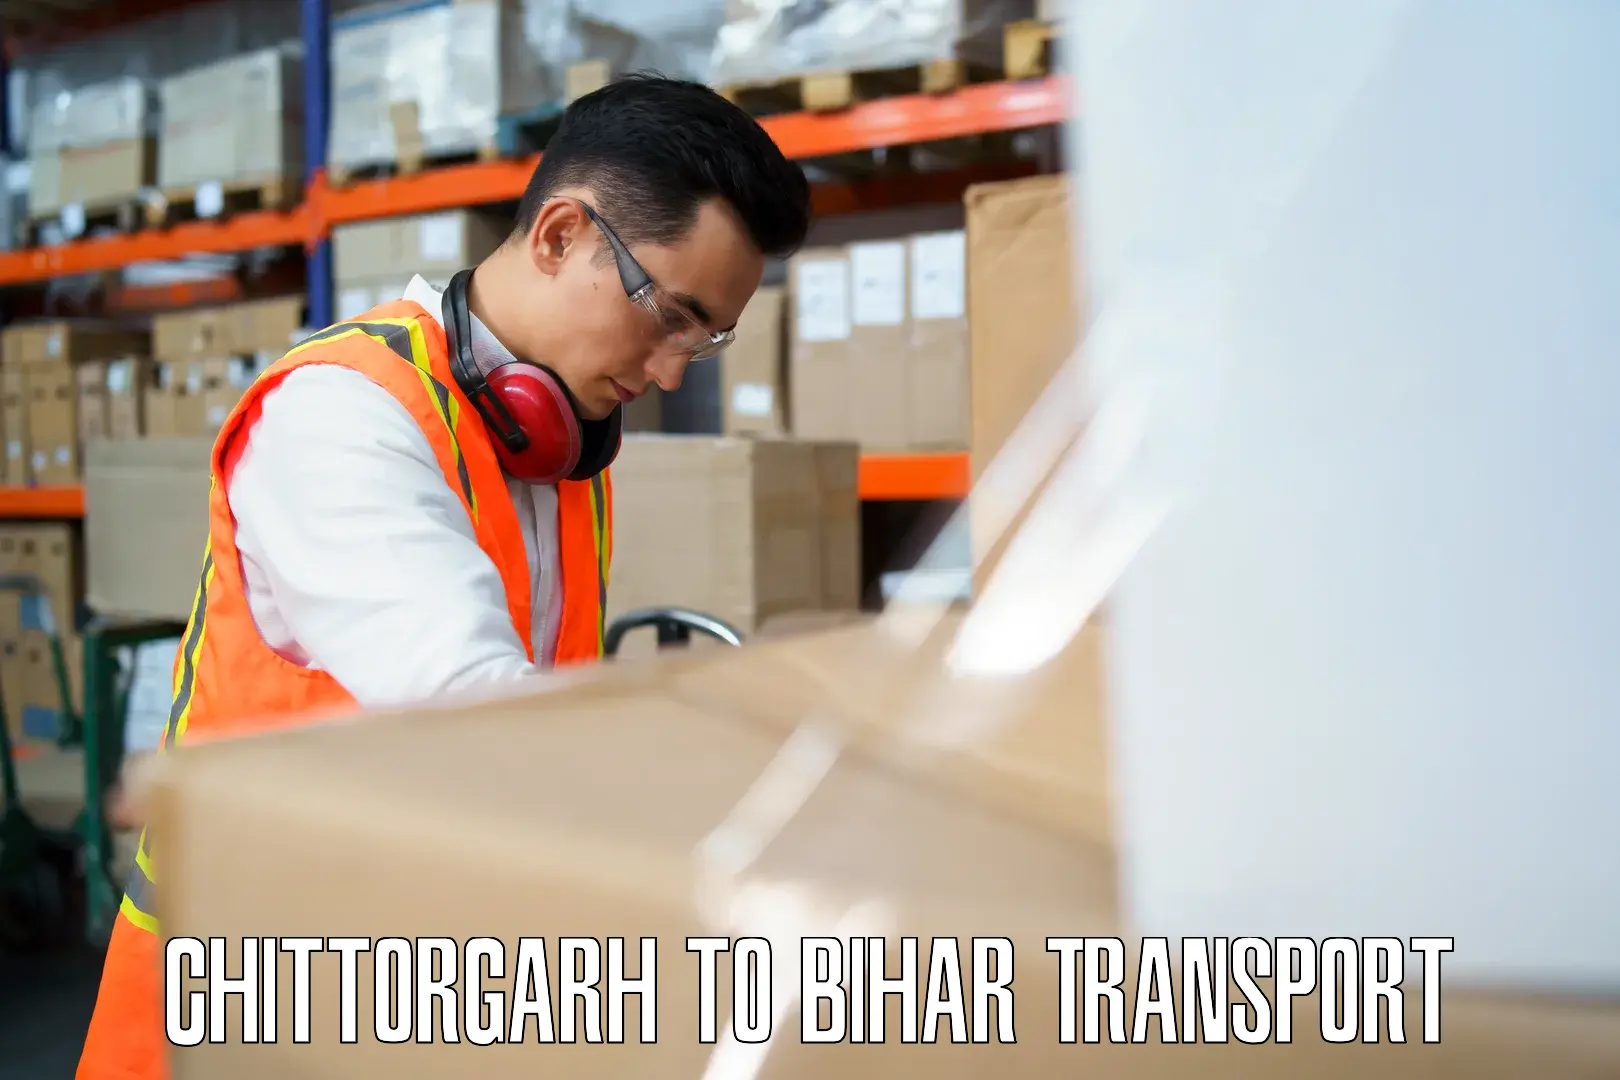 Online transport service Chittorgarh to Buxar